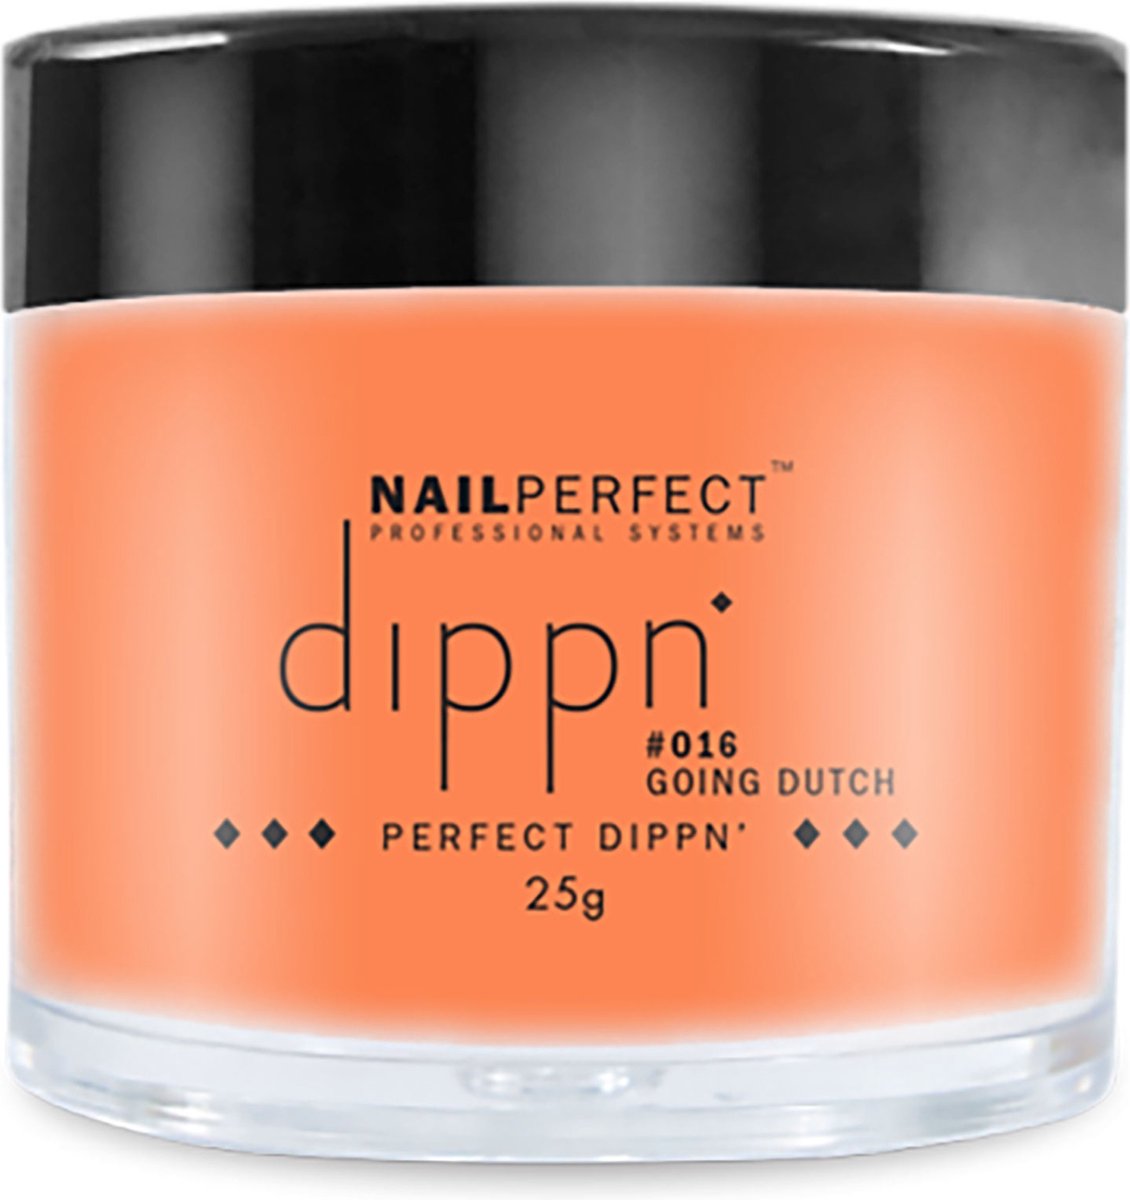 Nail Perfect - Dippn - #016 Going Dutch - 25gr